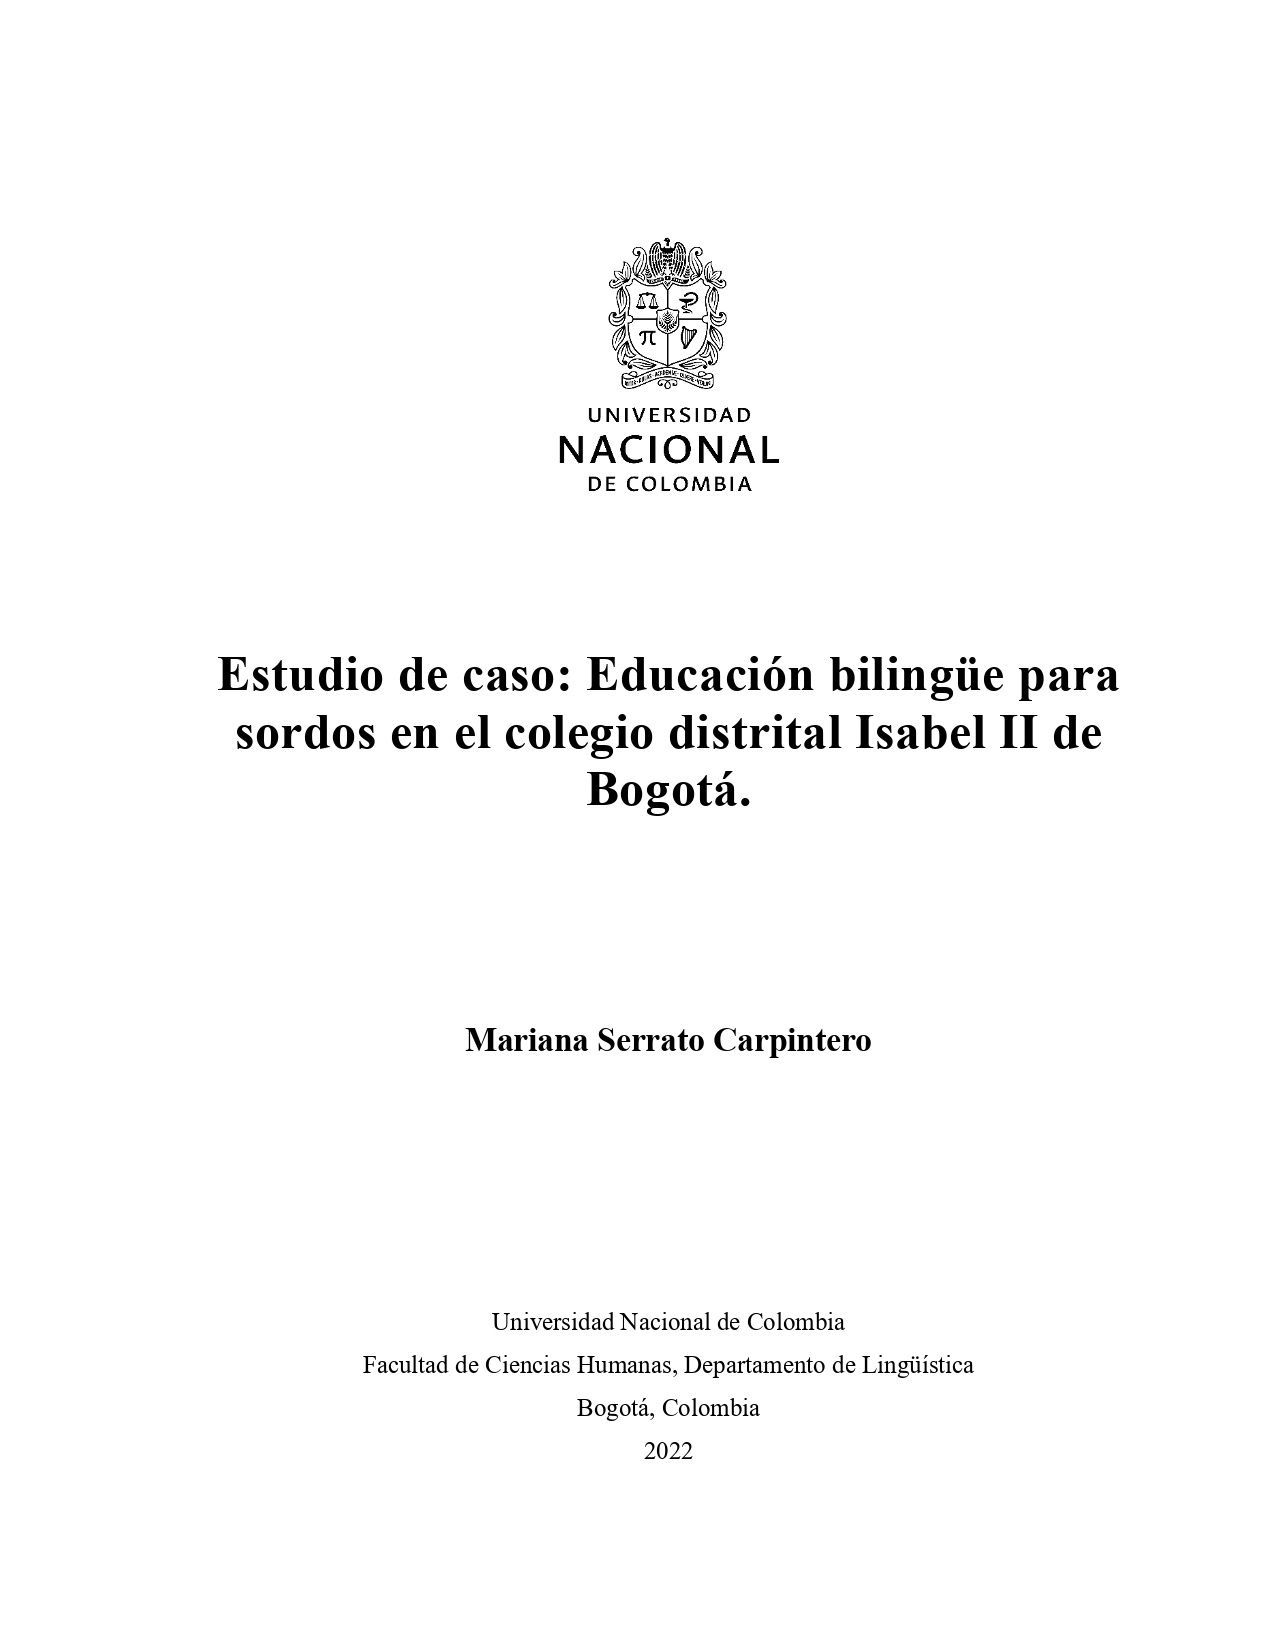 Estudio de caso Educación bilingüe para sordos en el colegio distrital Isabel II de Bogotá